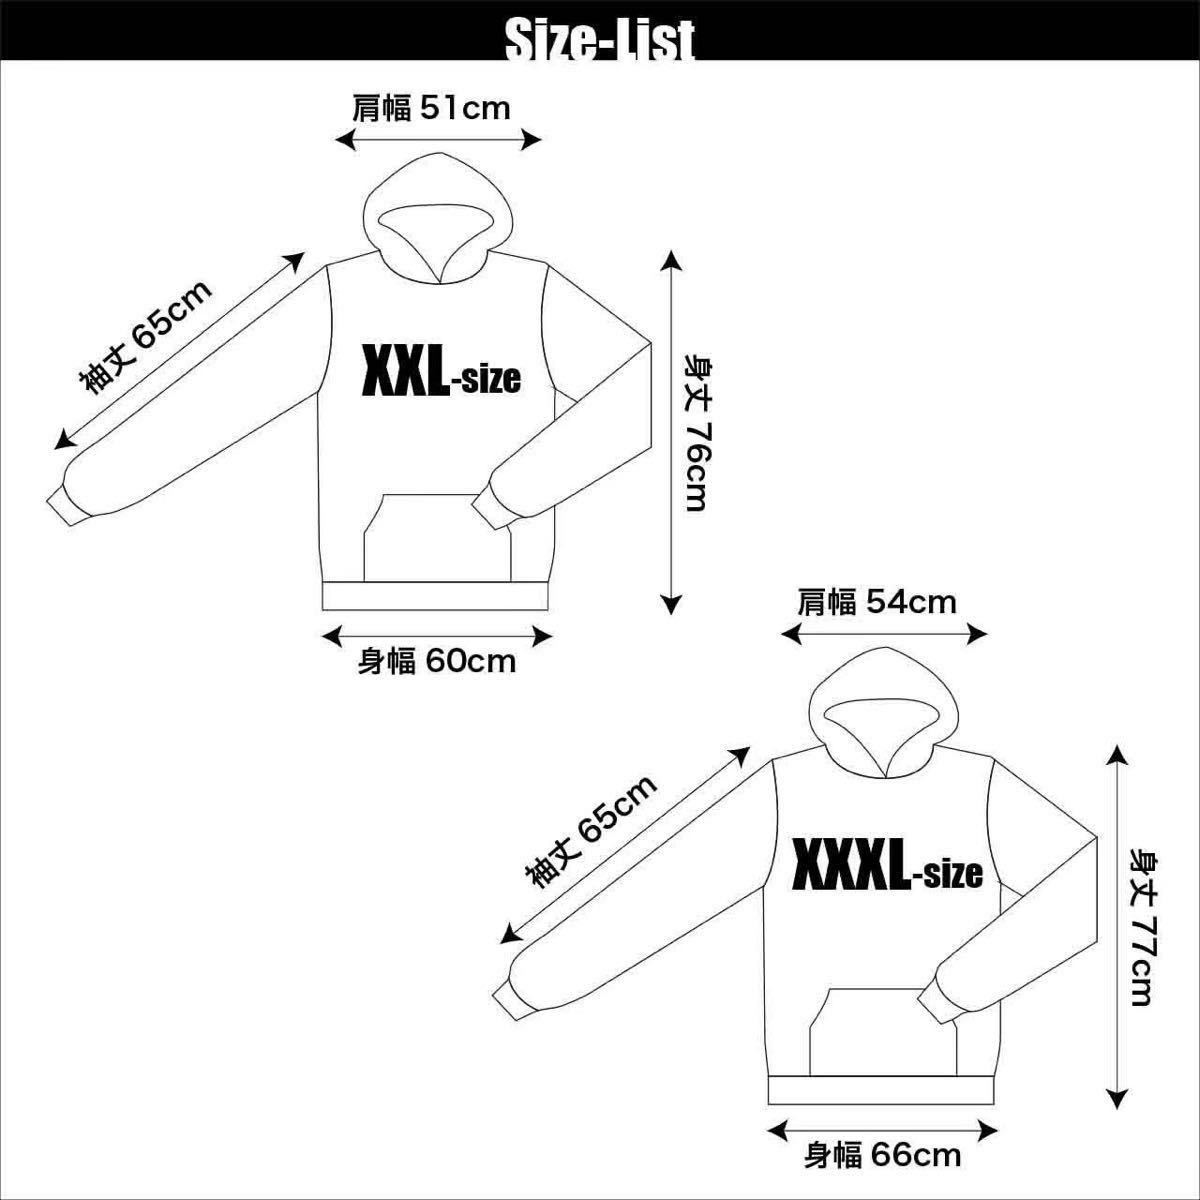  new goods Star Wars Stormtrooper NBA MLB America Pro sport T-shirt S M L XL big oversize XXL~5XL long T Parker 